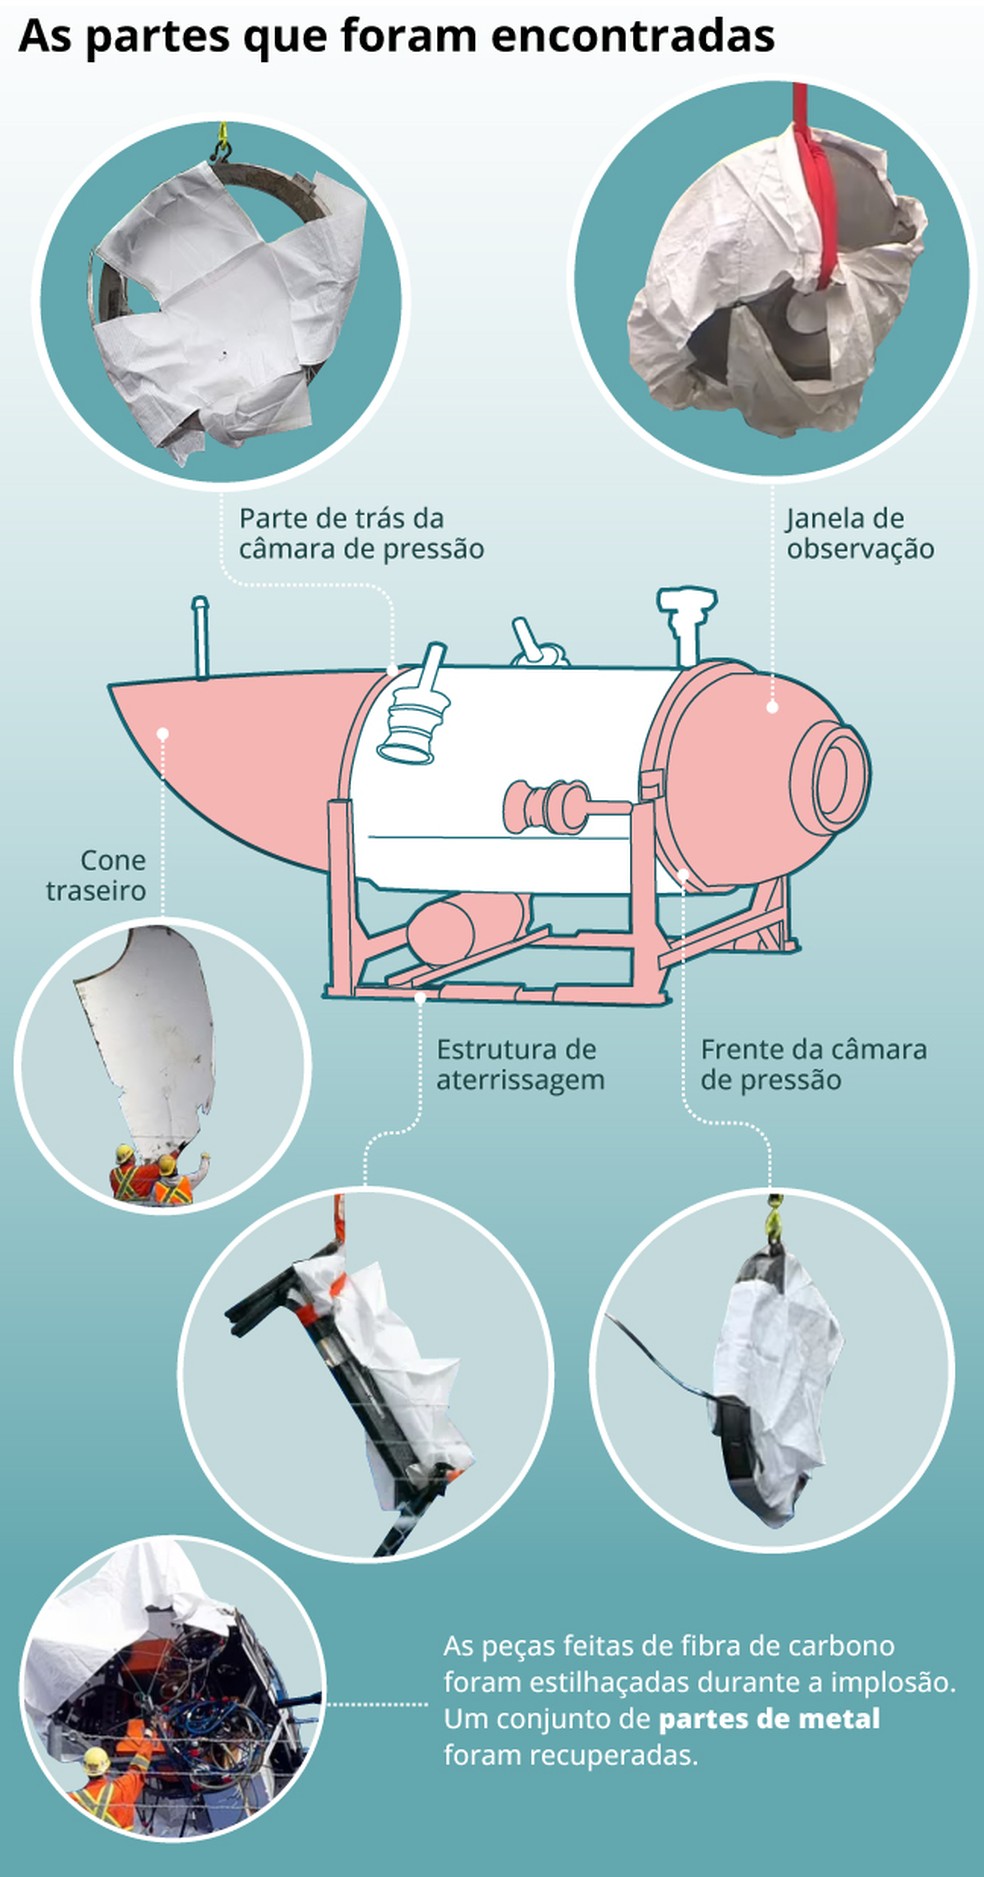 Imagens mostram partes que foram encontradas nas buscas pelos destroços do submarino Titan — Foto: Editoria Arte O Globo 